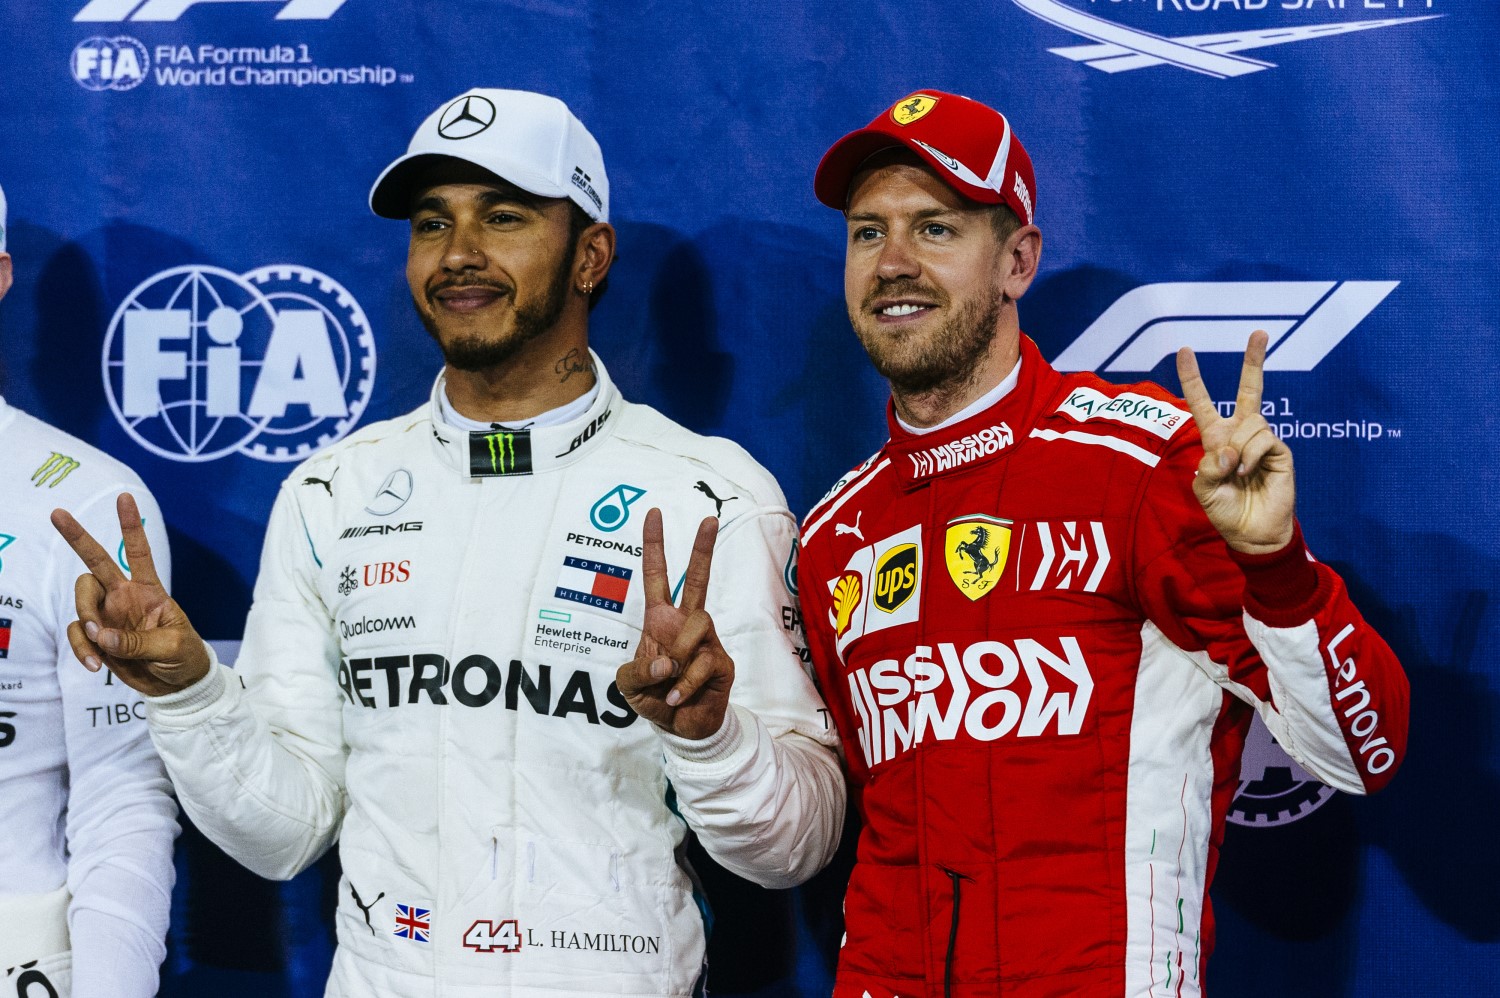 Vettel (R) wishes he had Hamilto's car (L)